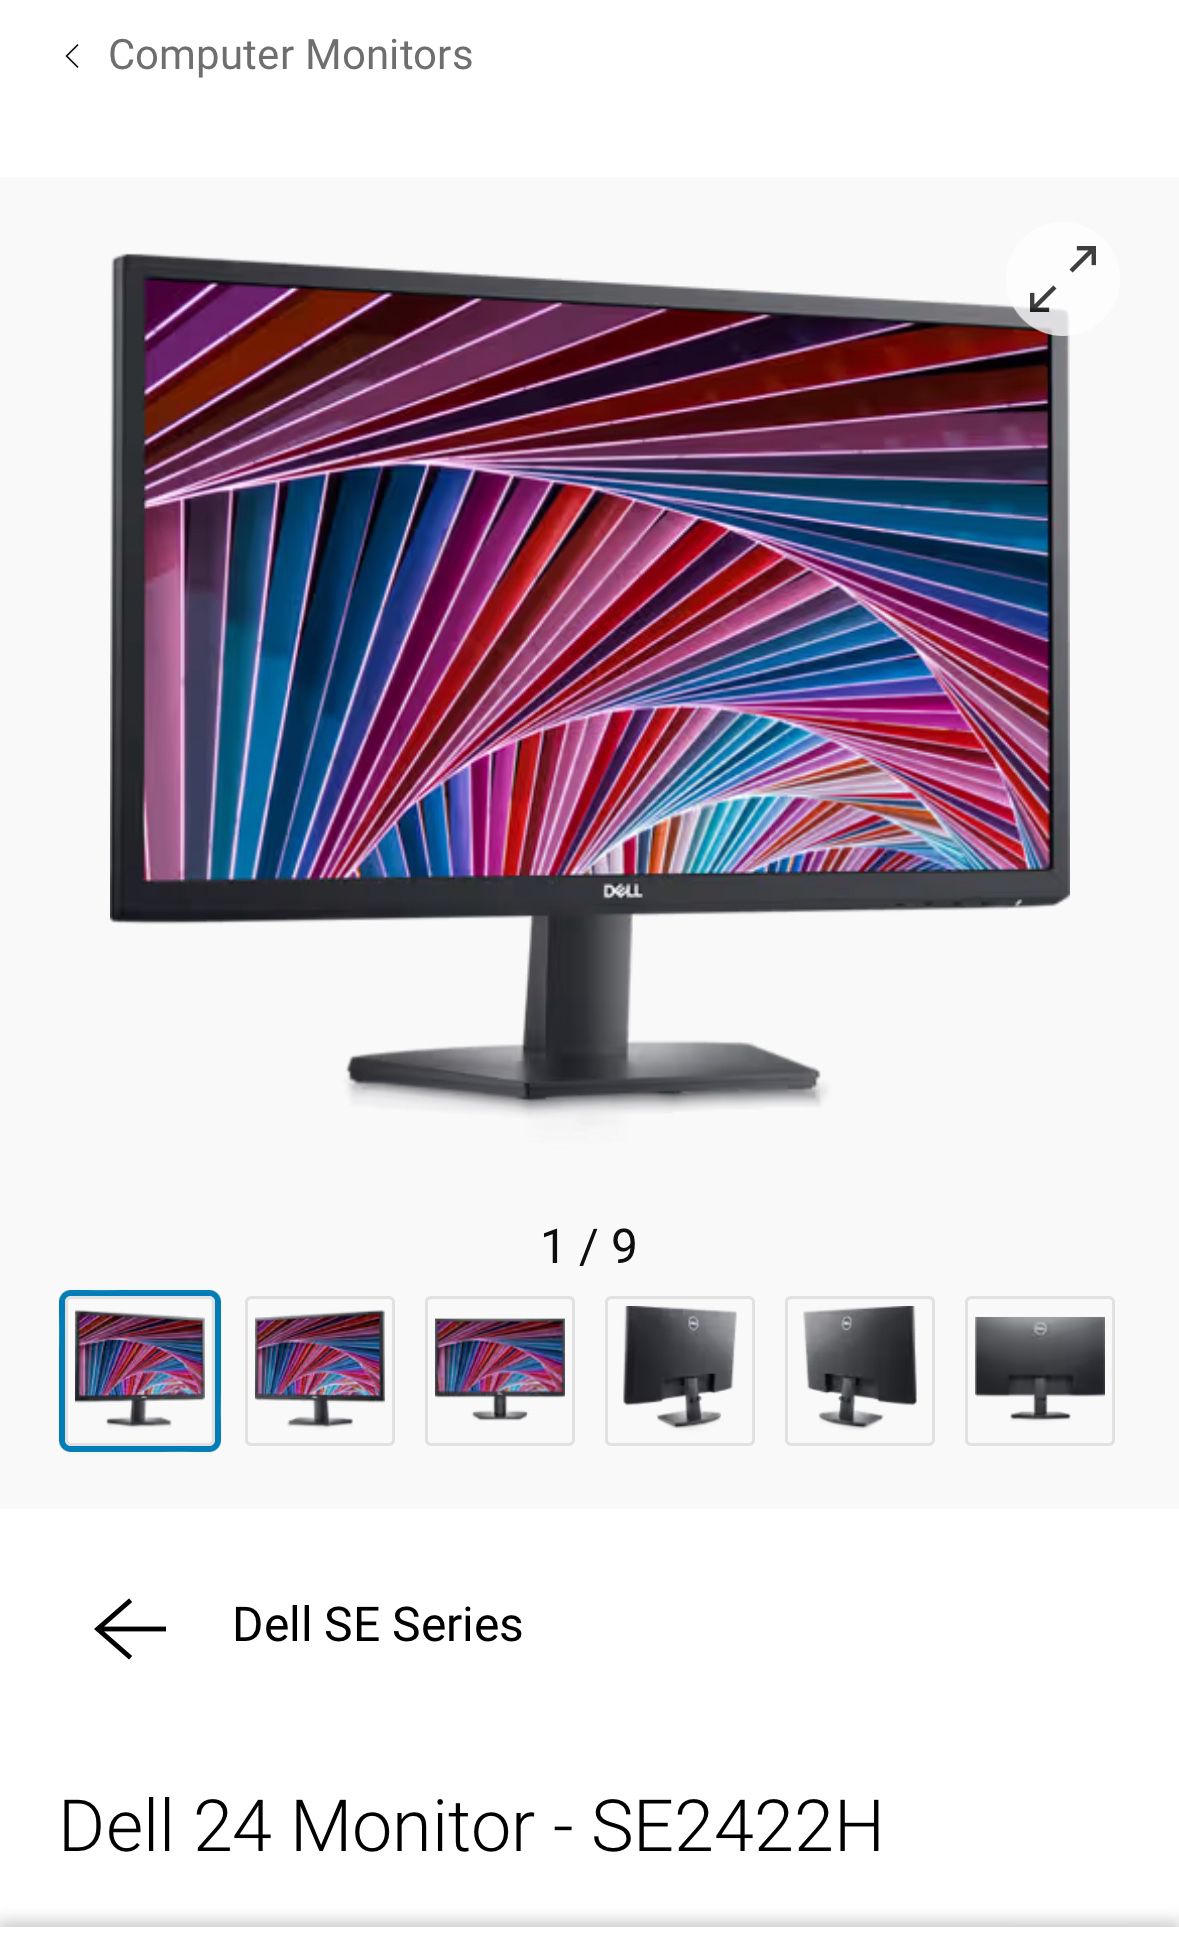 24 inch Dell monitors (brand new)